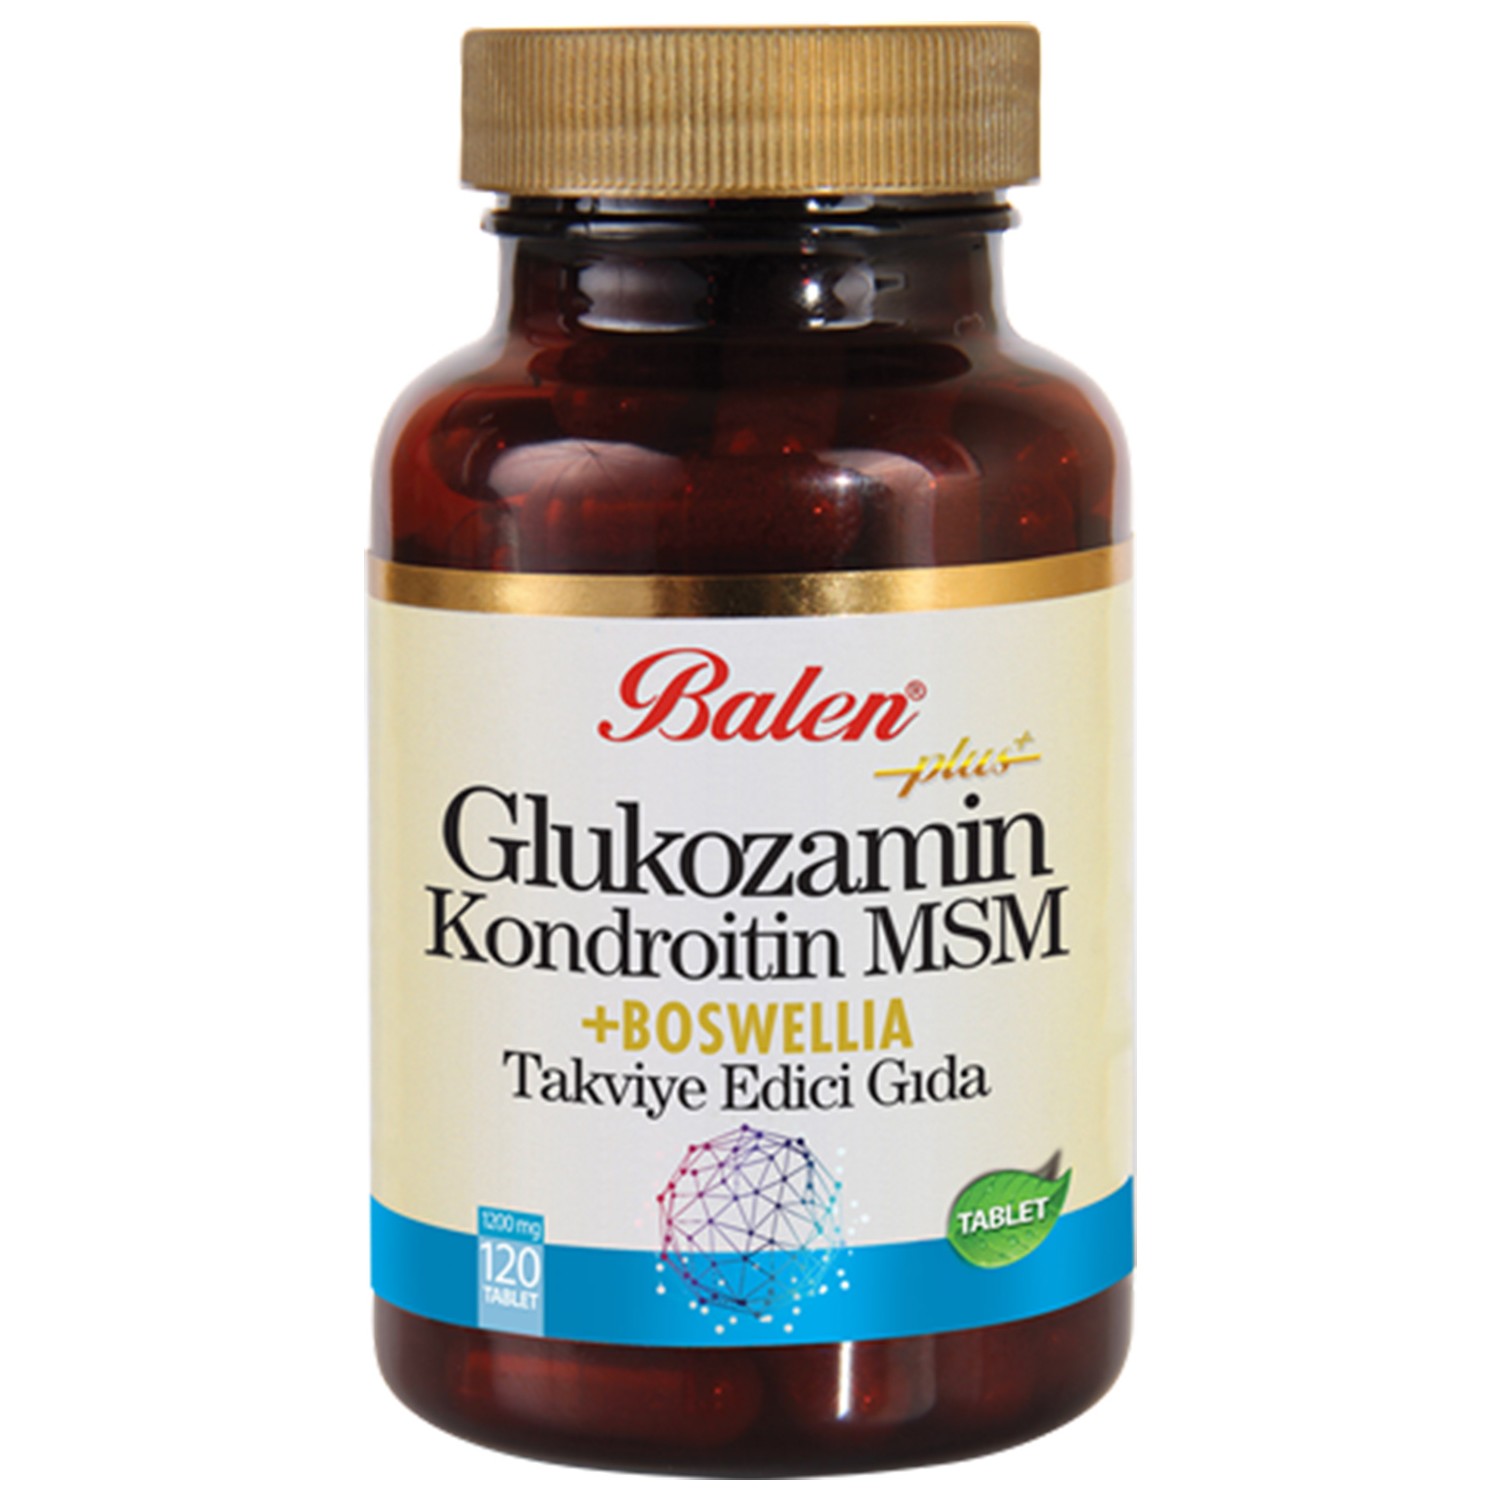 Активная добавка глюкозамин Balen Chondroitin Msm и Boswellia, 120 капсул, 1200 мг